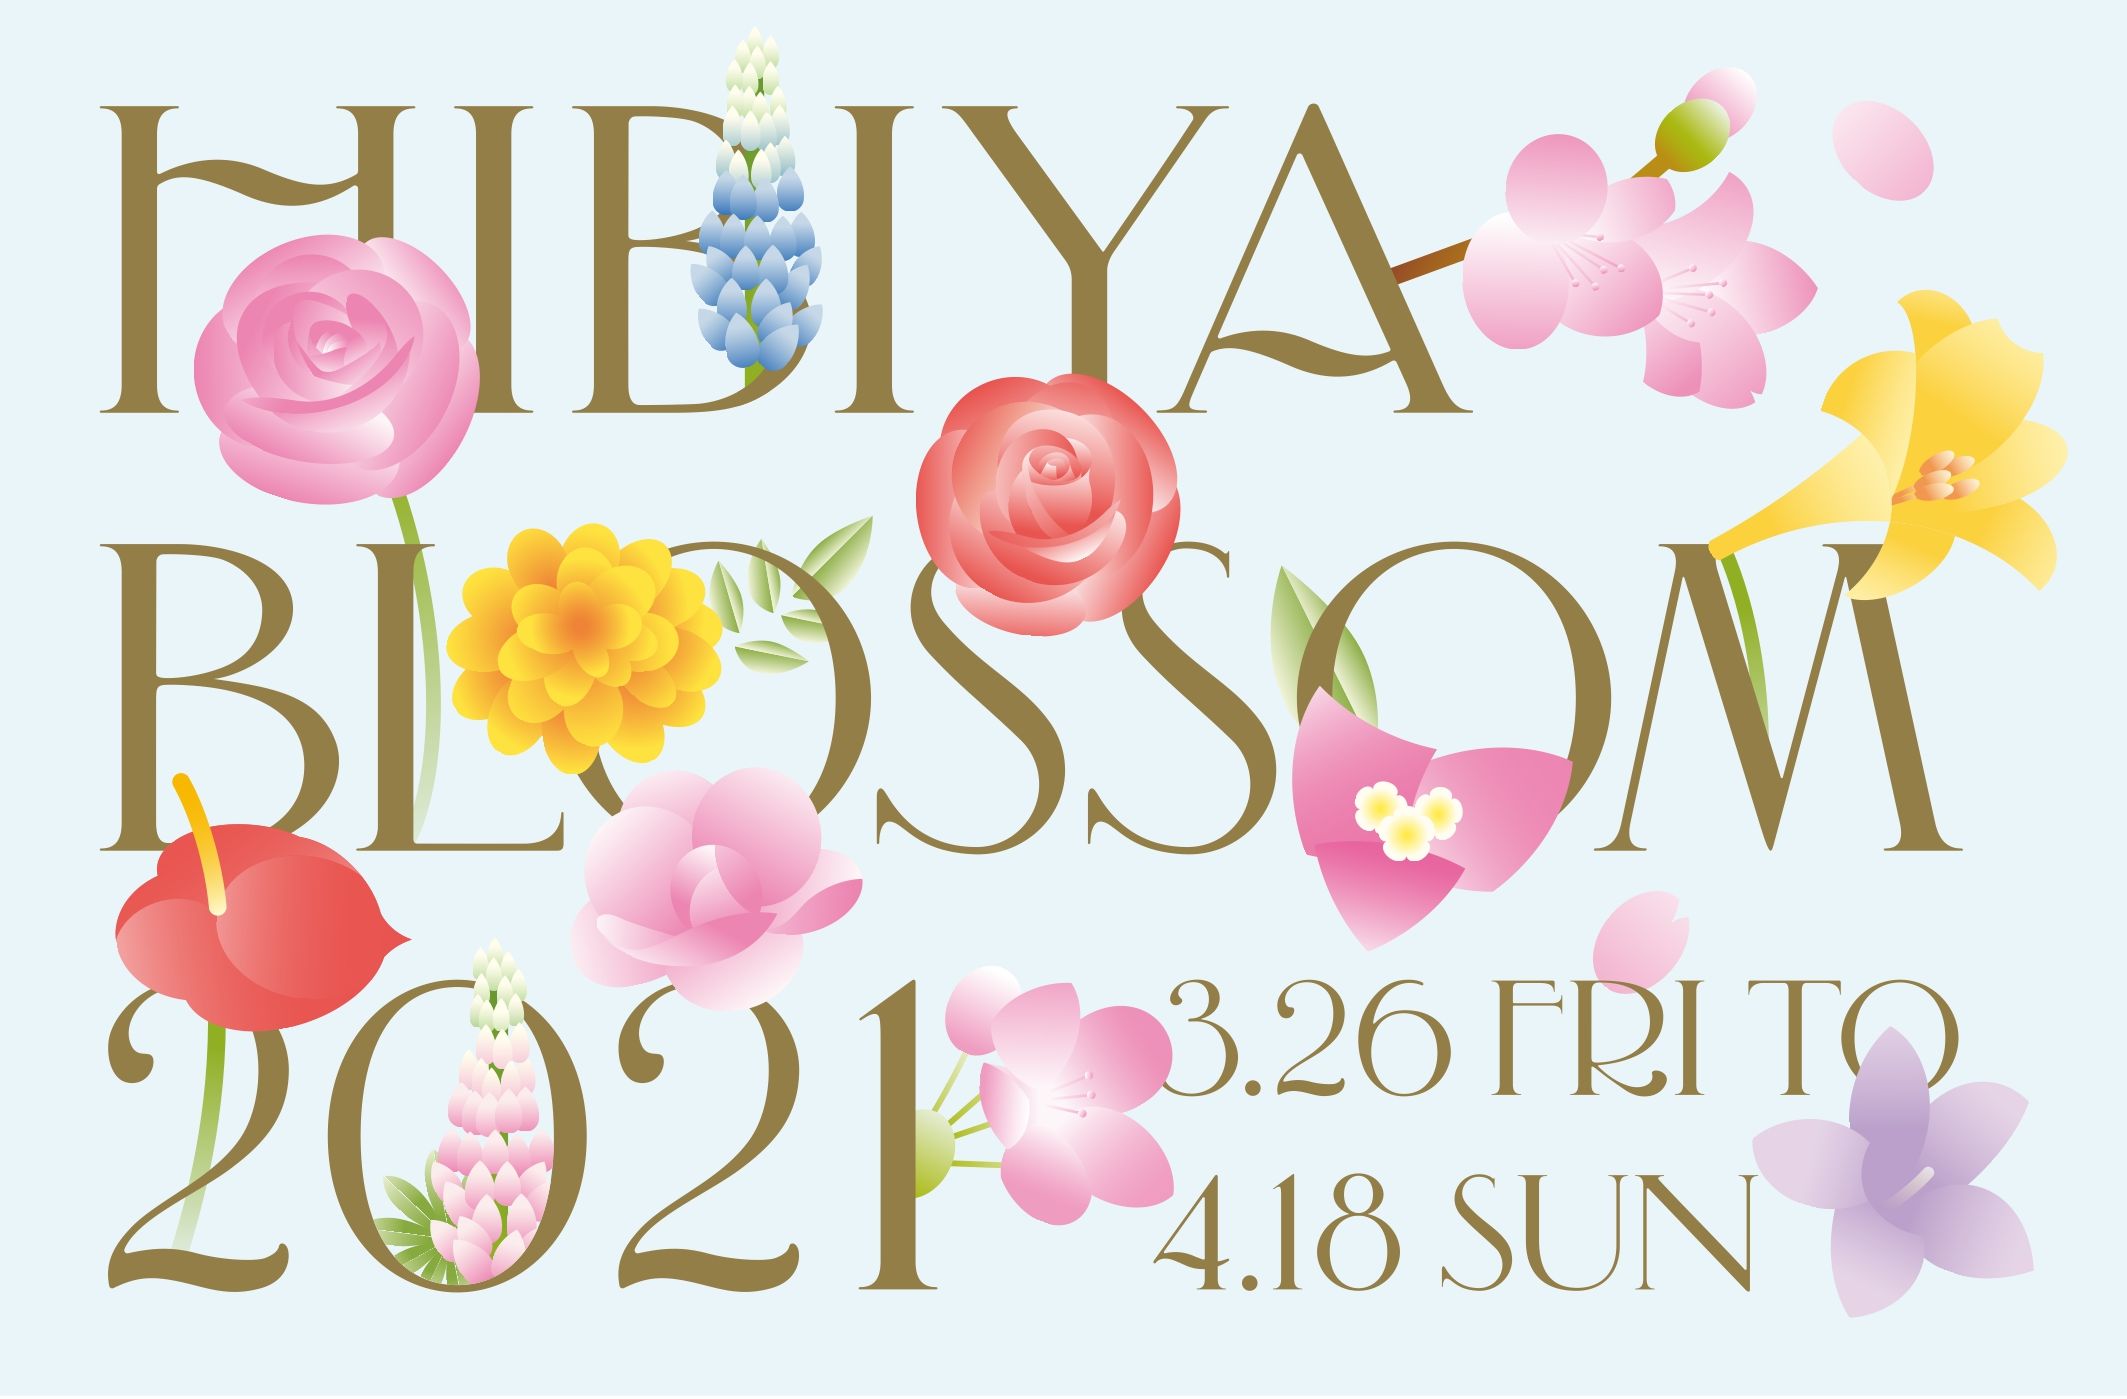 東京ミッドタウン日比谷 花のエネルギーで日比谷から日本を明るく元気にするコンテンツを発信 Hibiya Blossom 21 開催 東京ミッドタウン マネジメント株式会社のプレスリリース